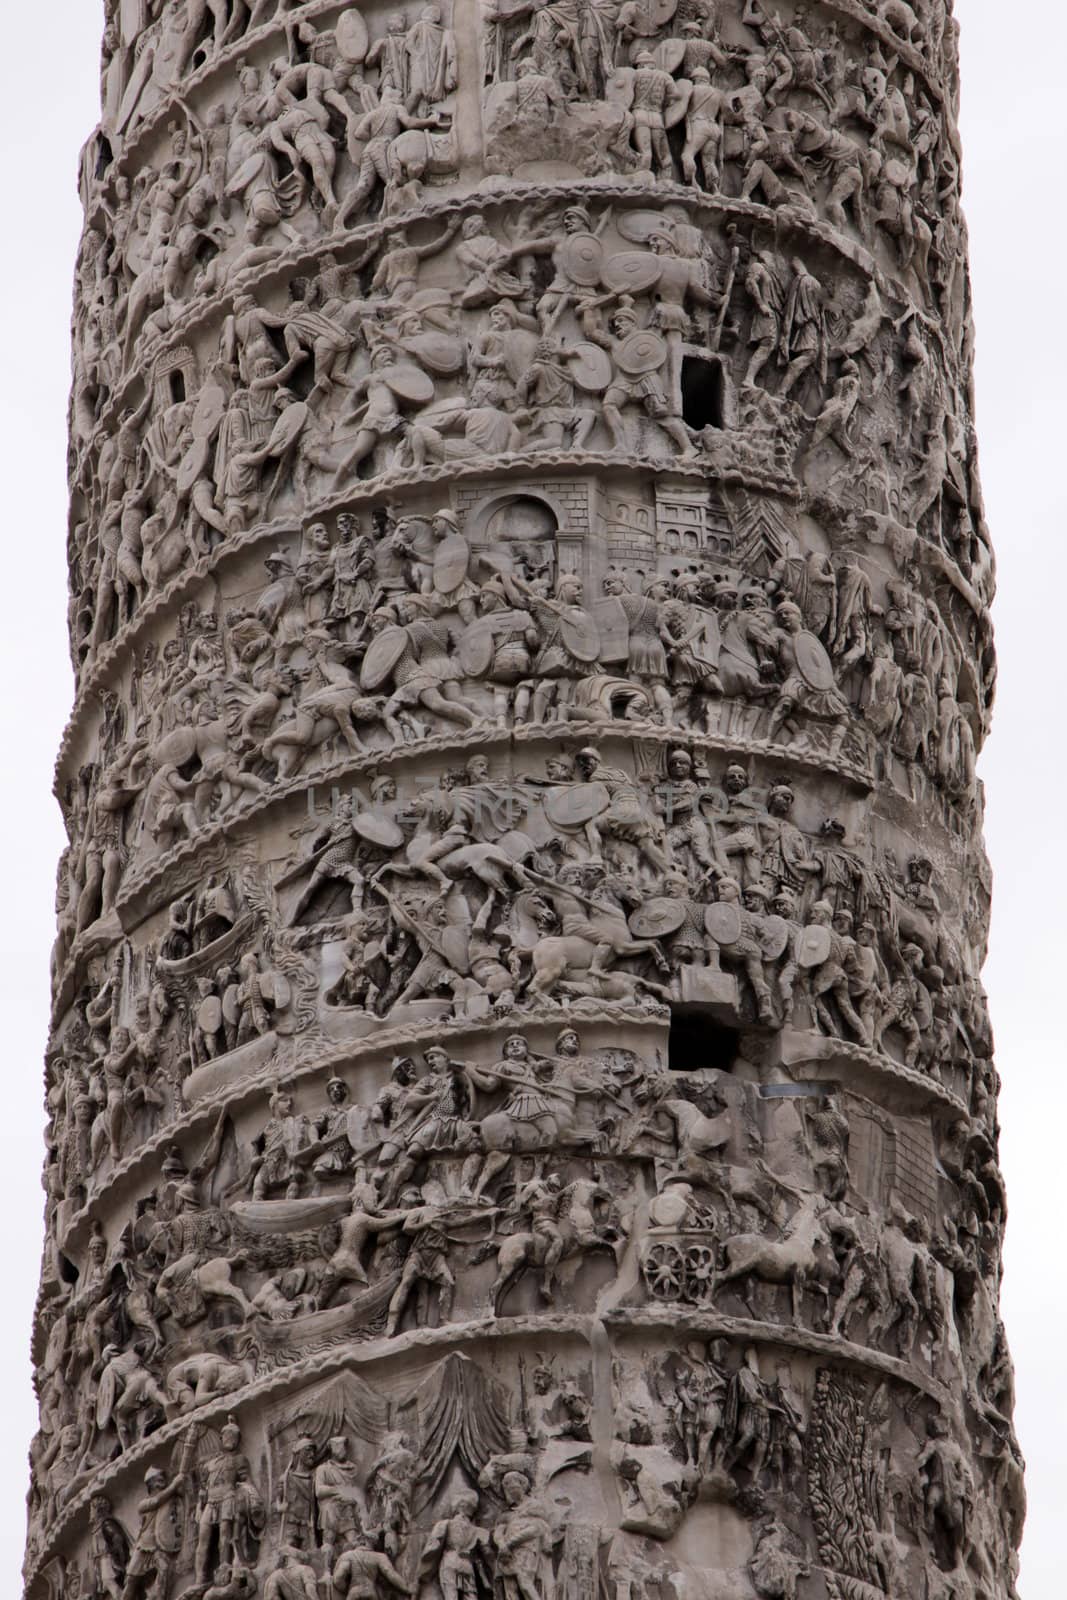 Column of Marcus Aurelius Details by ca2hill